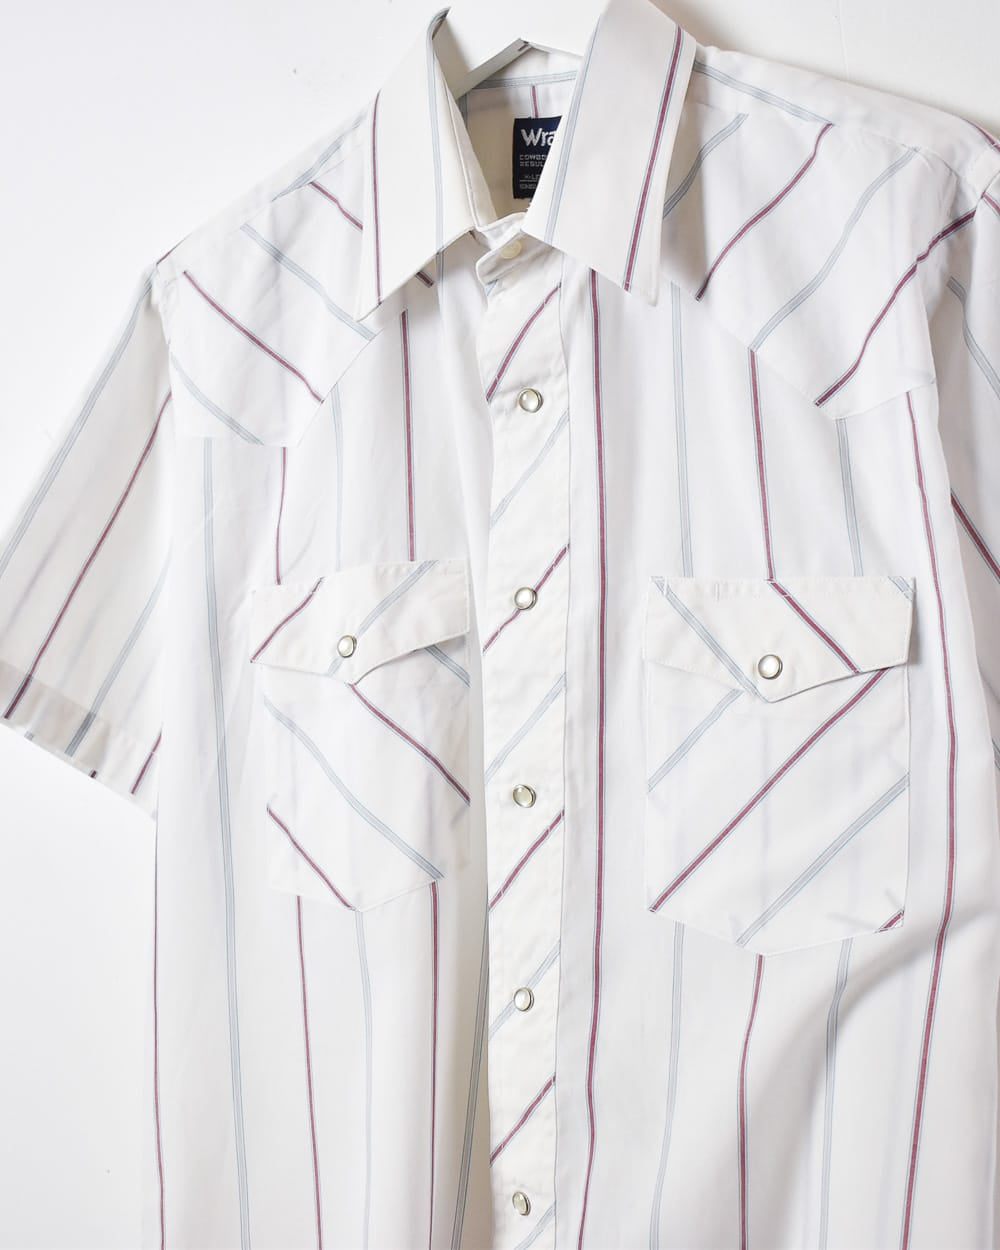 White Wrangler Striped Short Sleeved Shirt - Medium